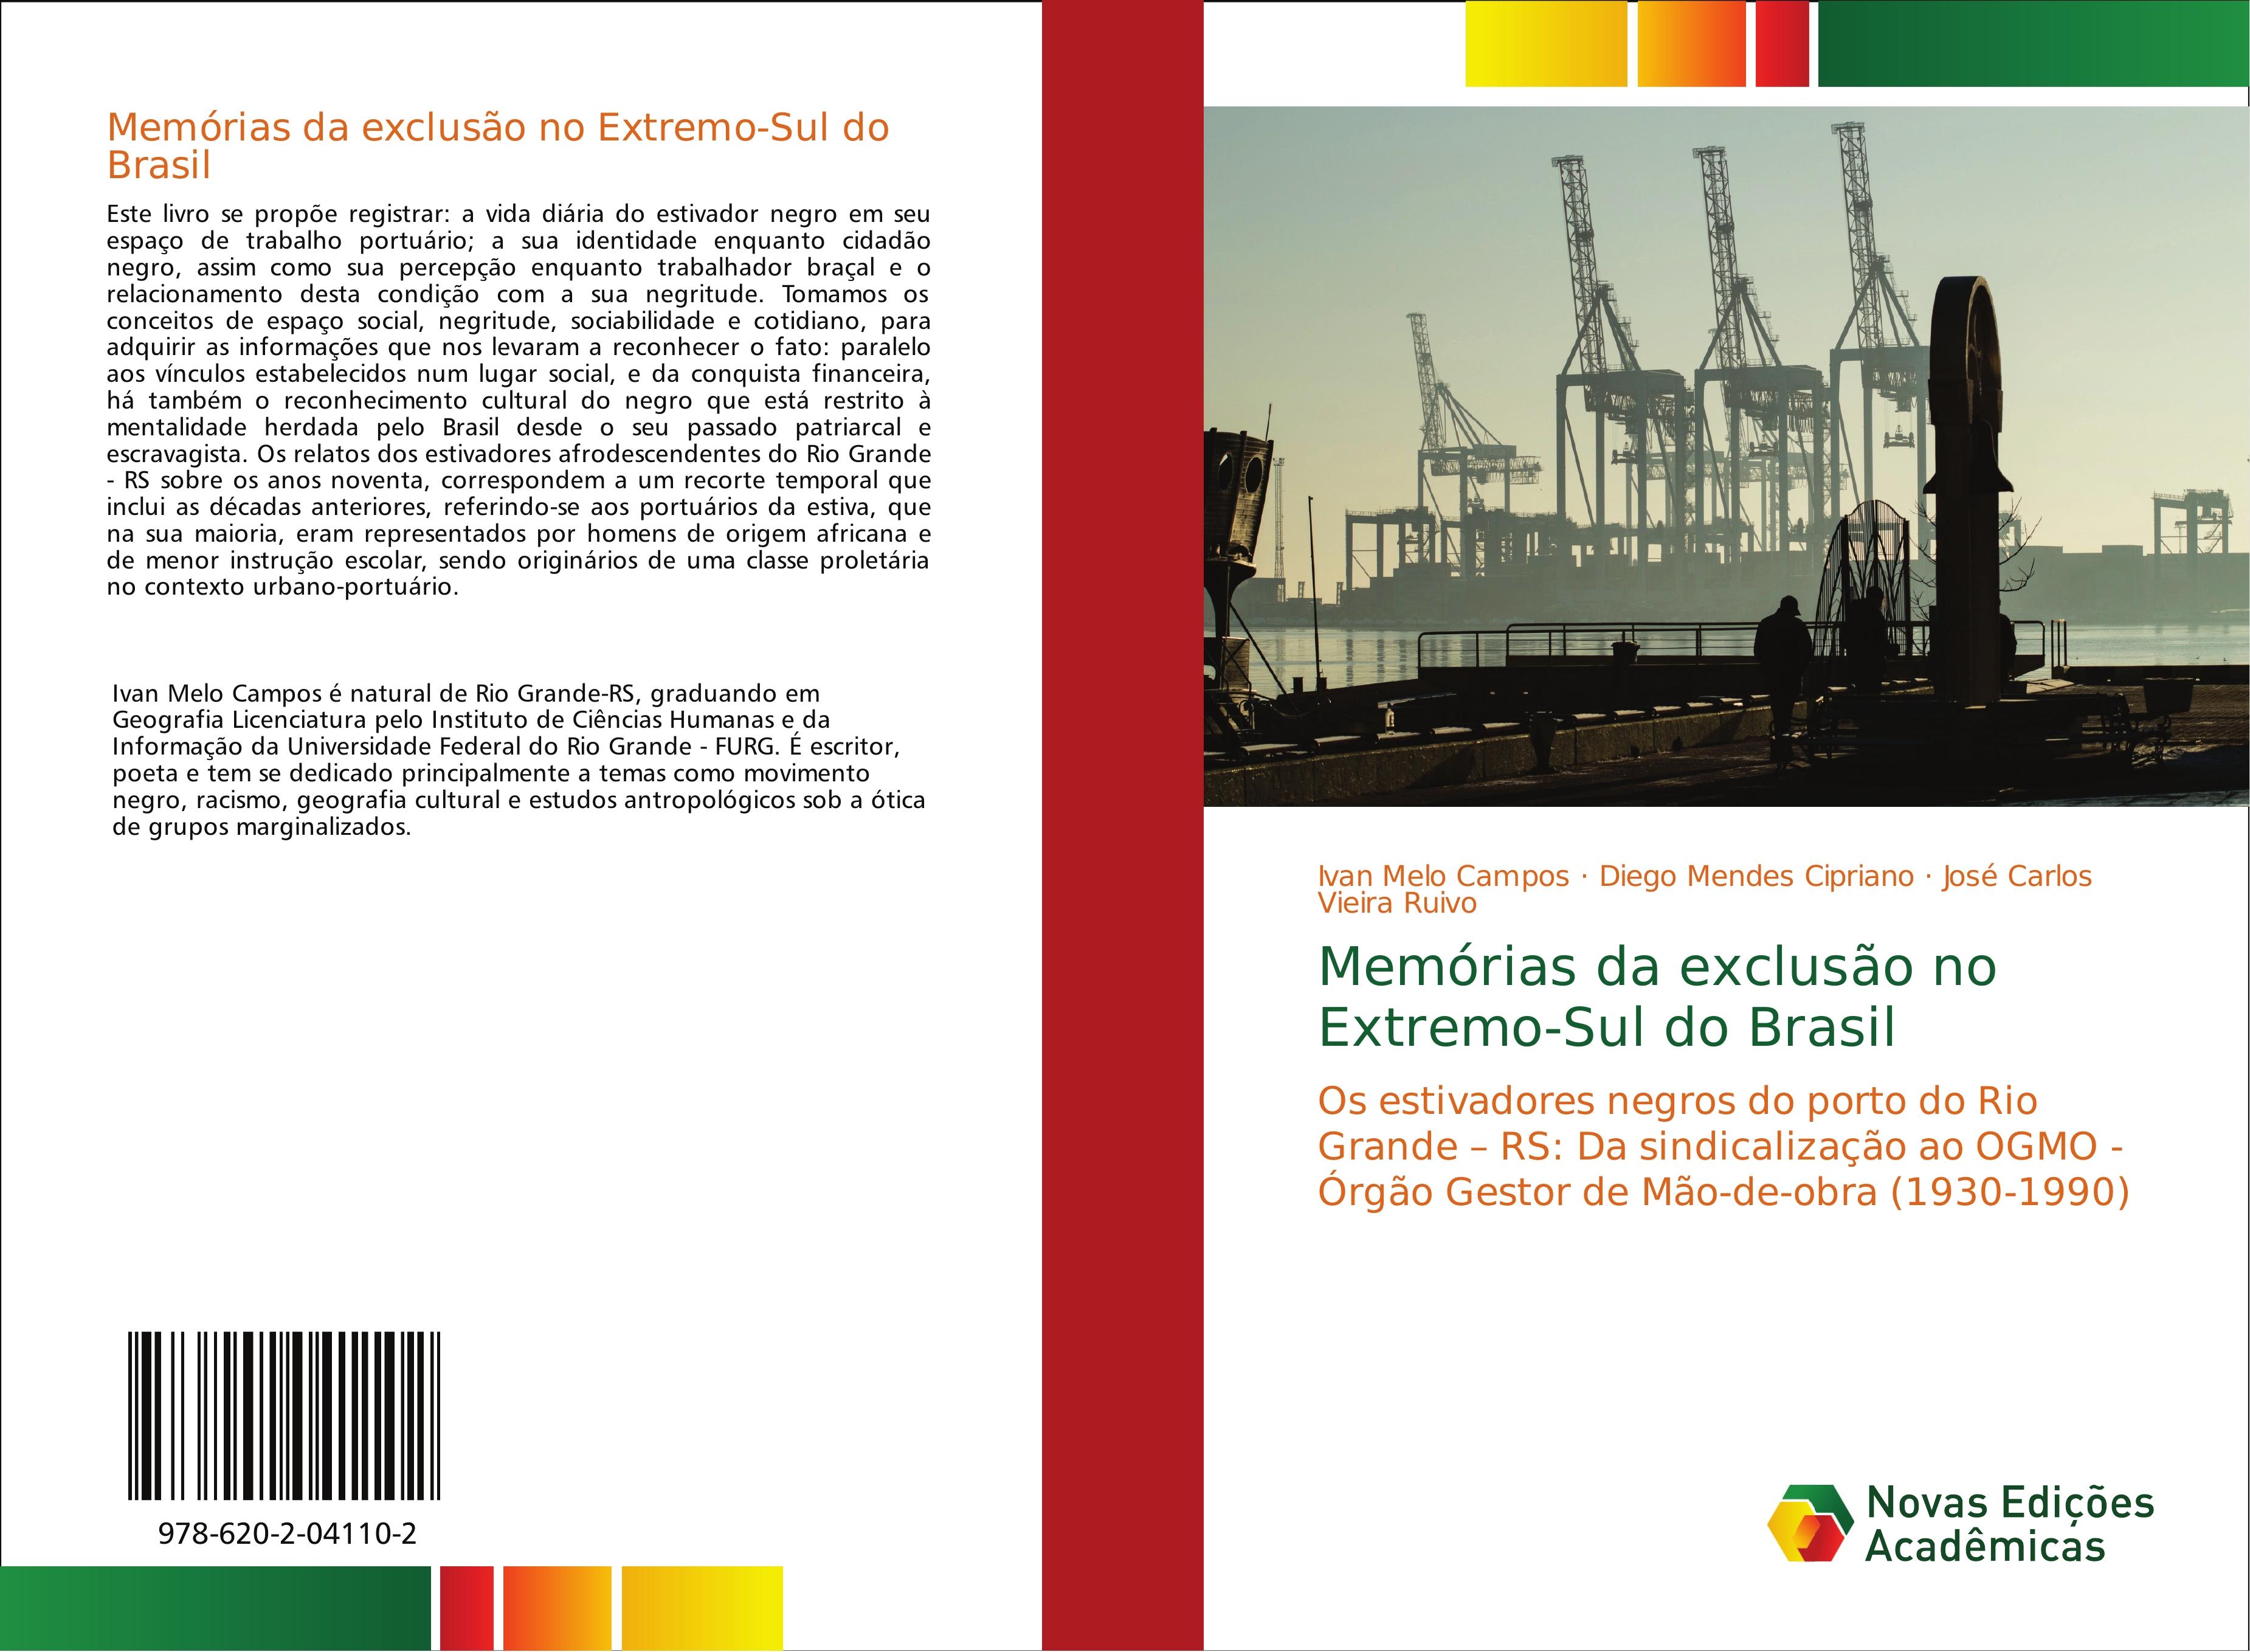 Memórias da exclusão no Extremo-Sul do Brasil - Ivan Melo Campos Diego Mendes Cipriano José Carlos Vieira Ruivo